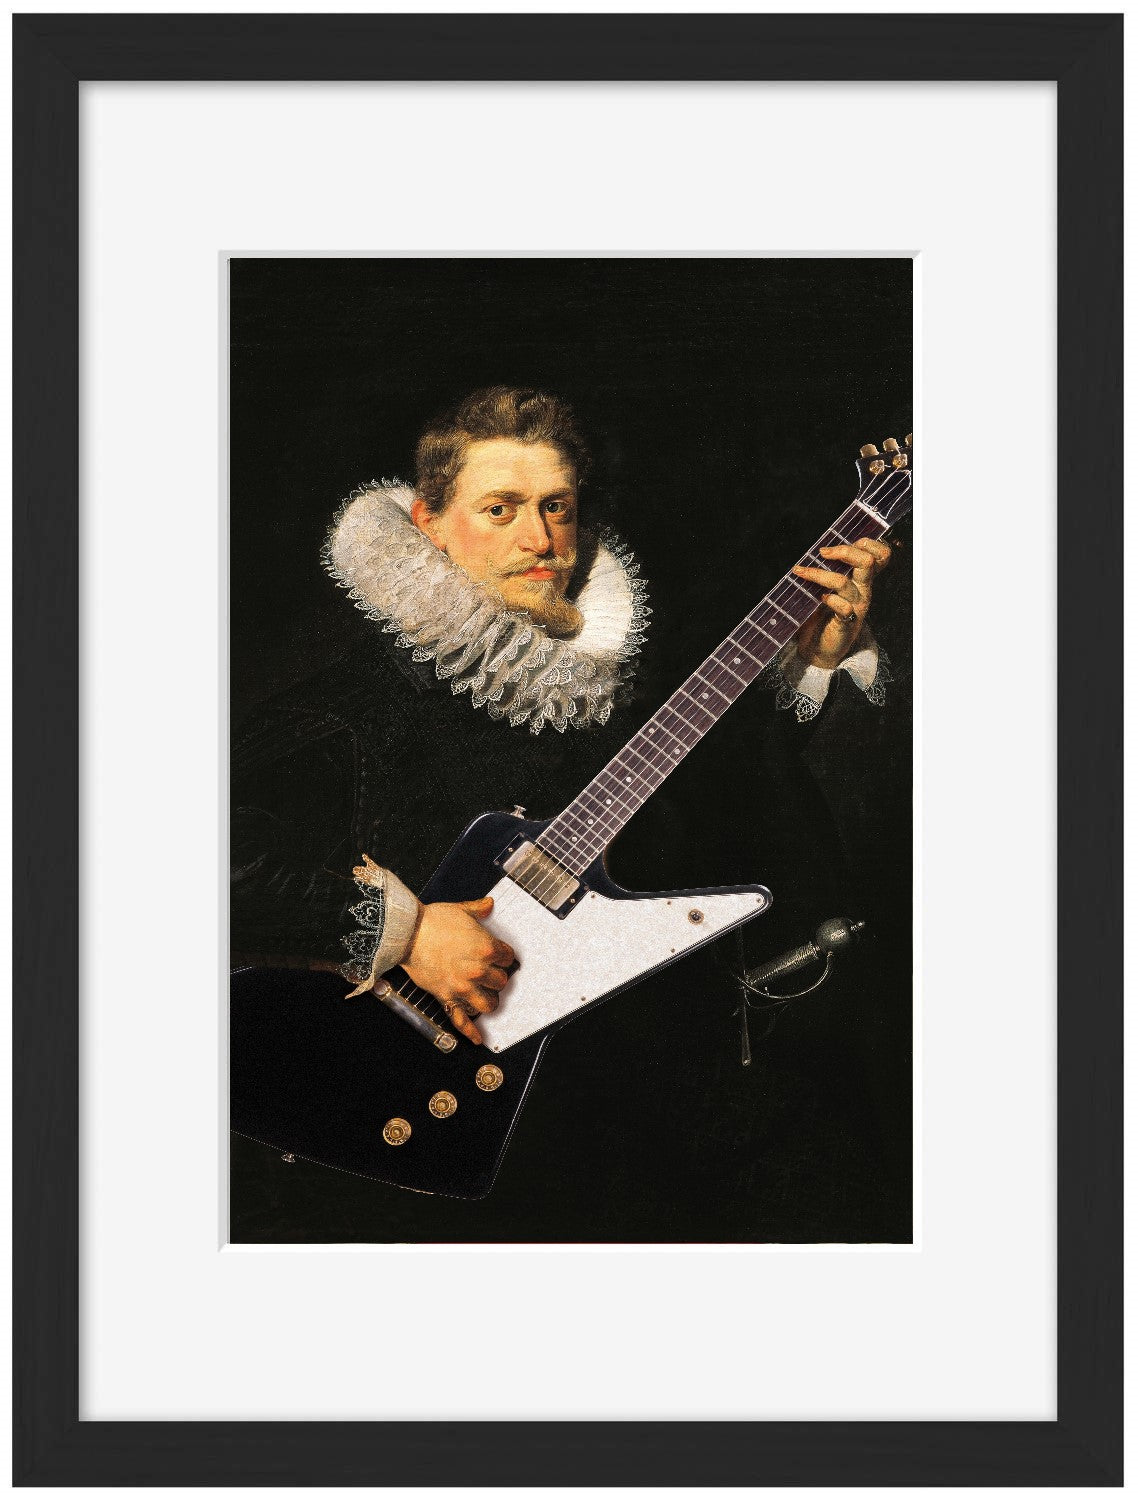 Guitare 3-historical, print-Framed Print-30 x 40 cm-BLUE SHAKER